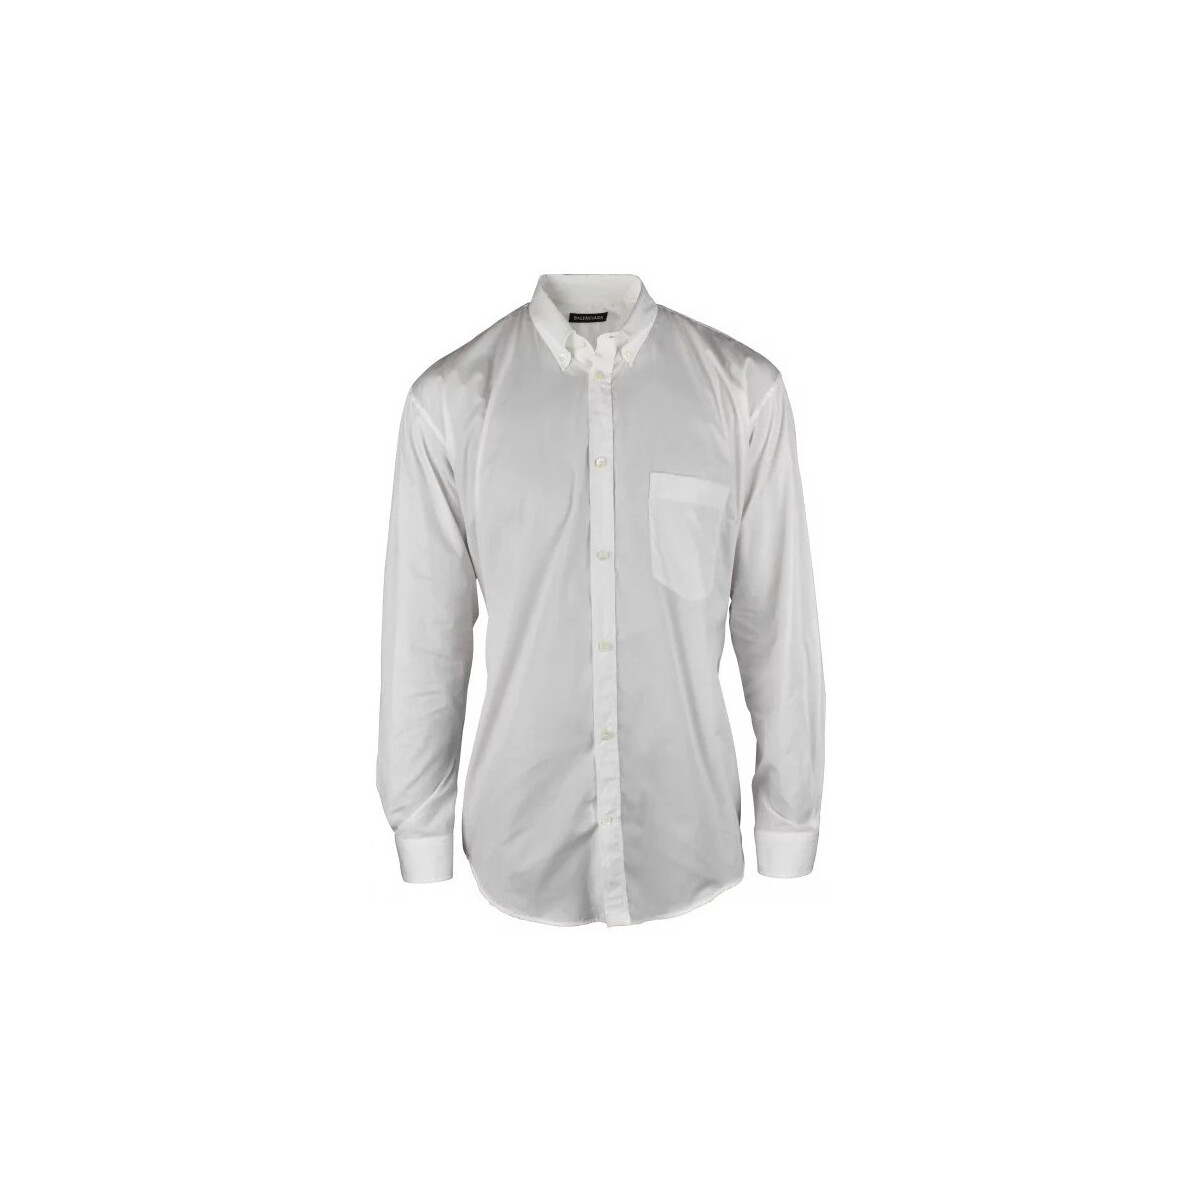 Abbigliamento Uomo Camicie maniche lunghe Balenciaga  Bianco